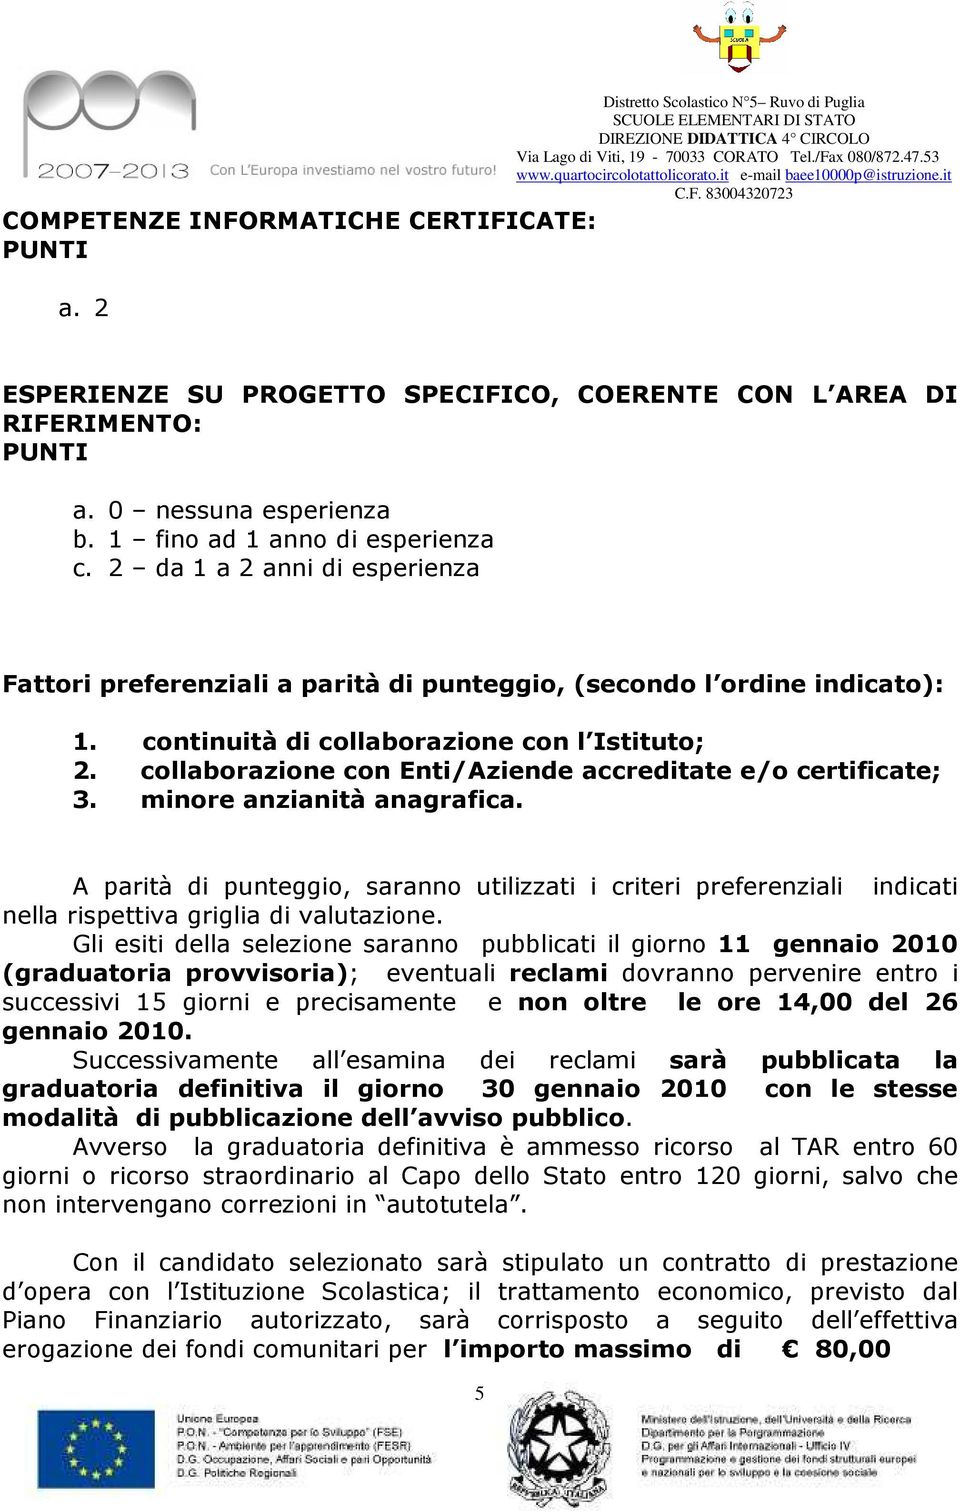 collaborazione con Enti/Aziende accreditate e/o certificate; 3. minore anzianità anagrafica.